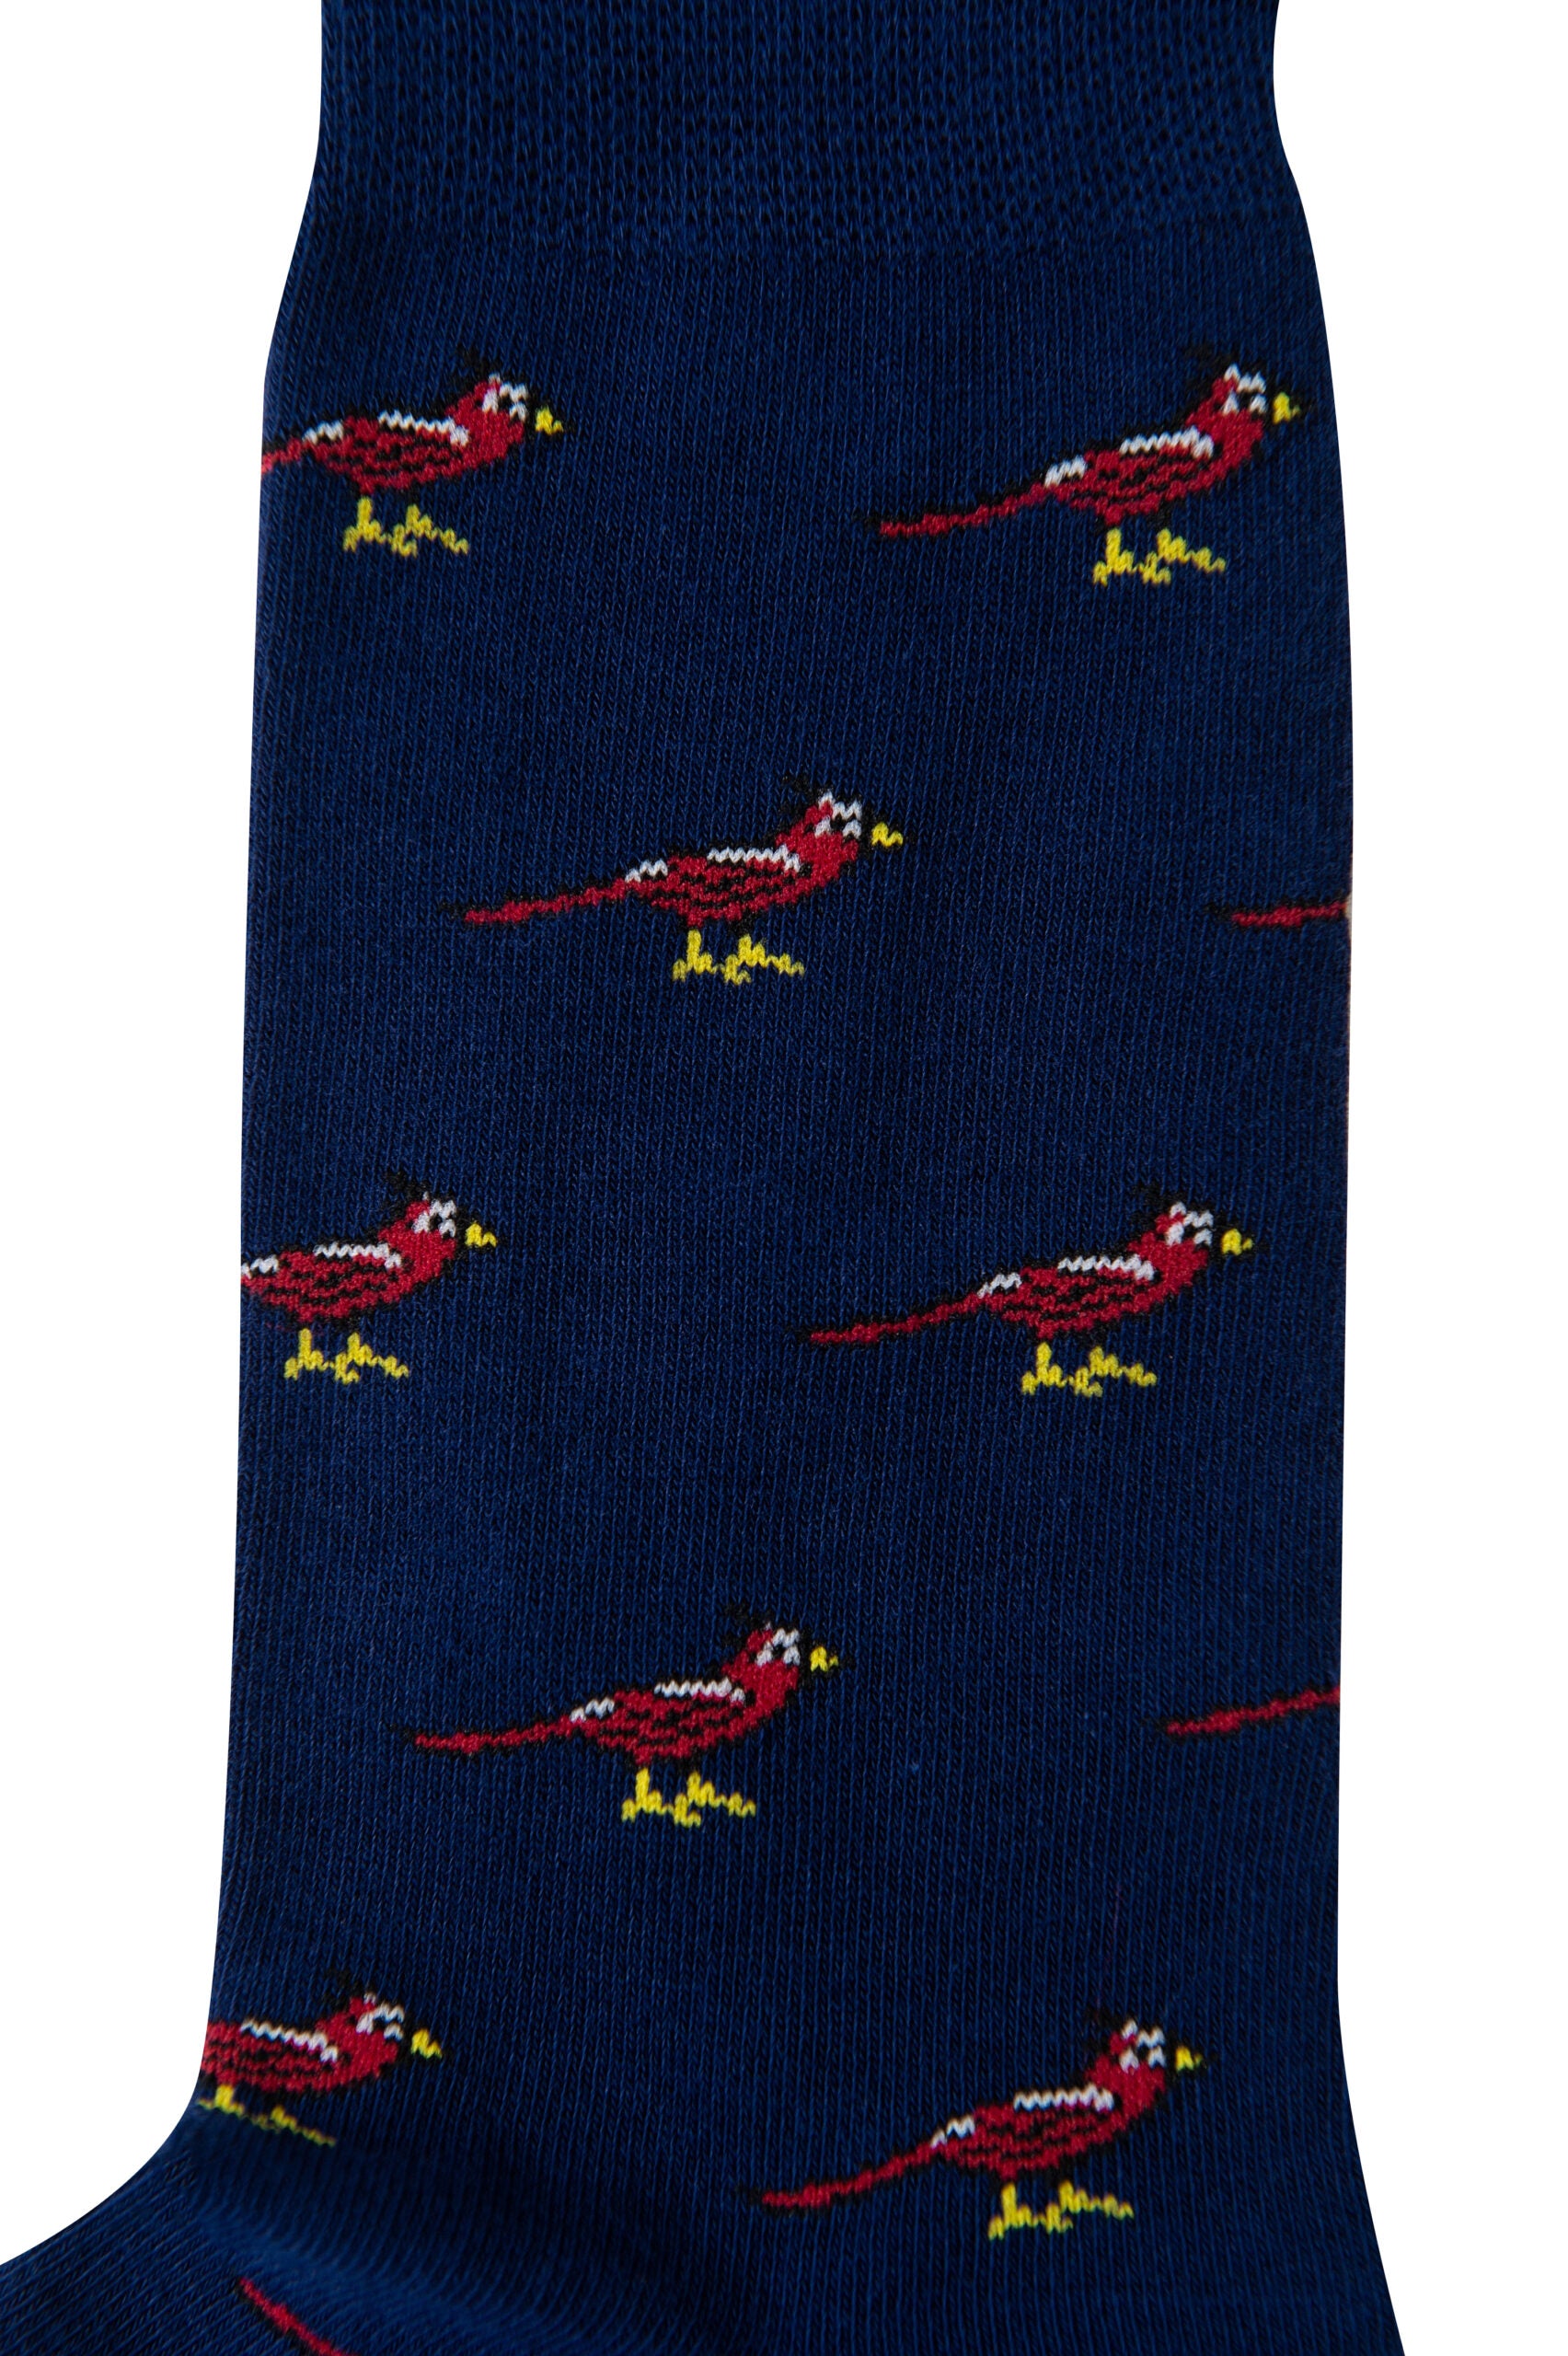 A pair of Cardinal Bird Socks.